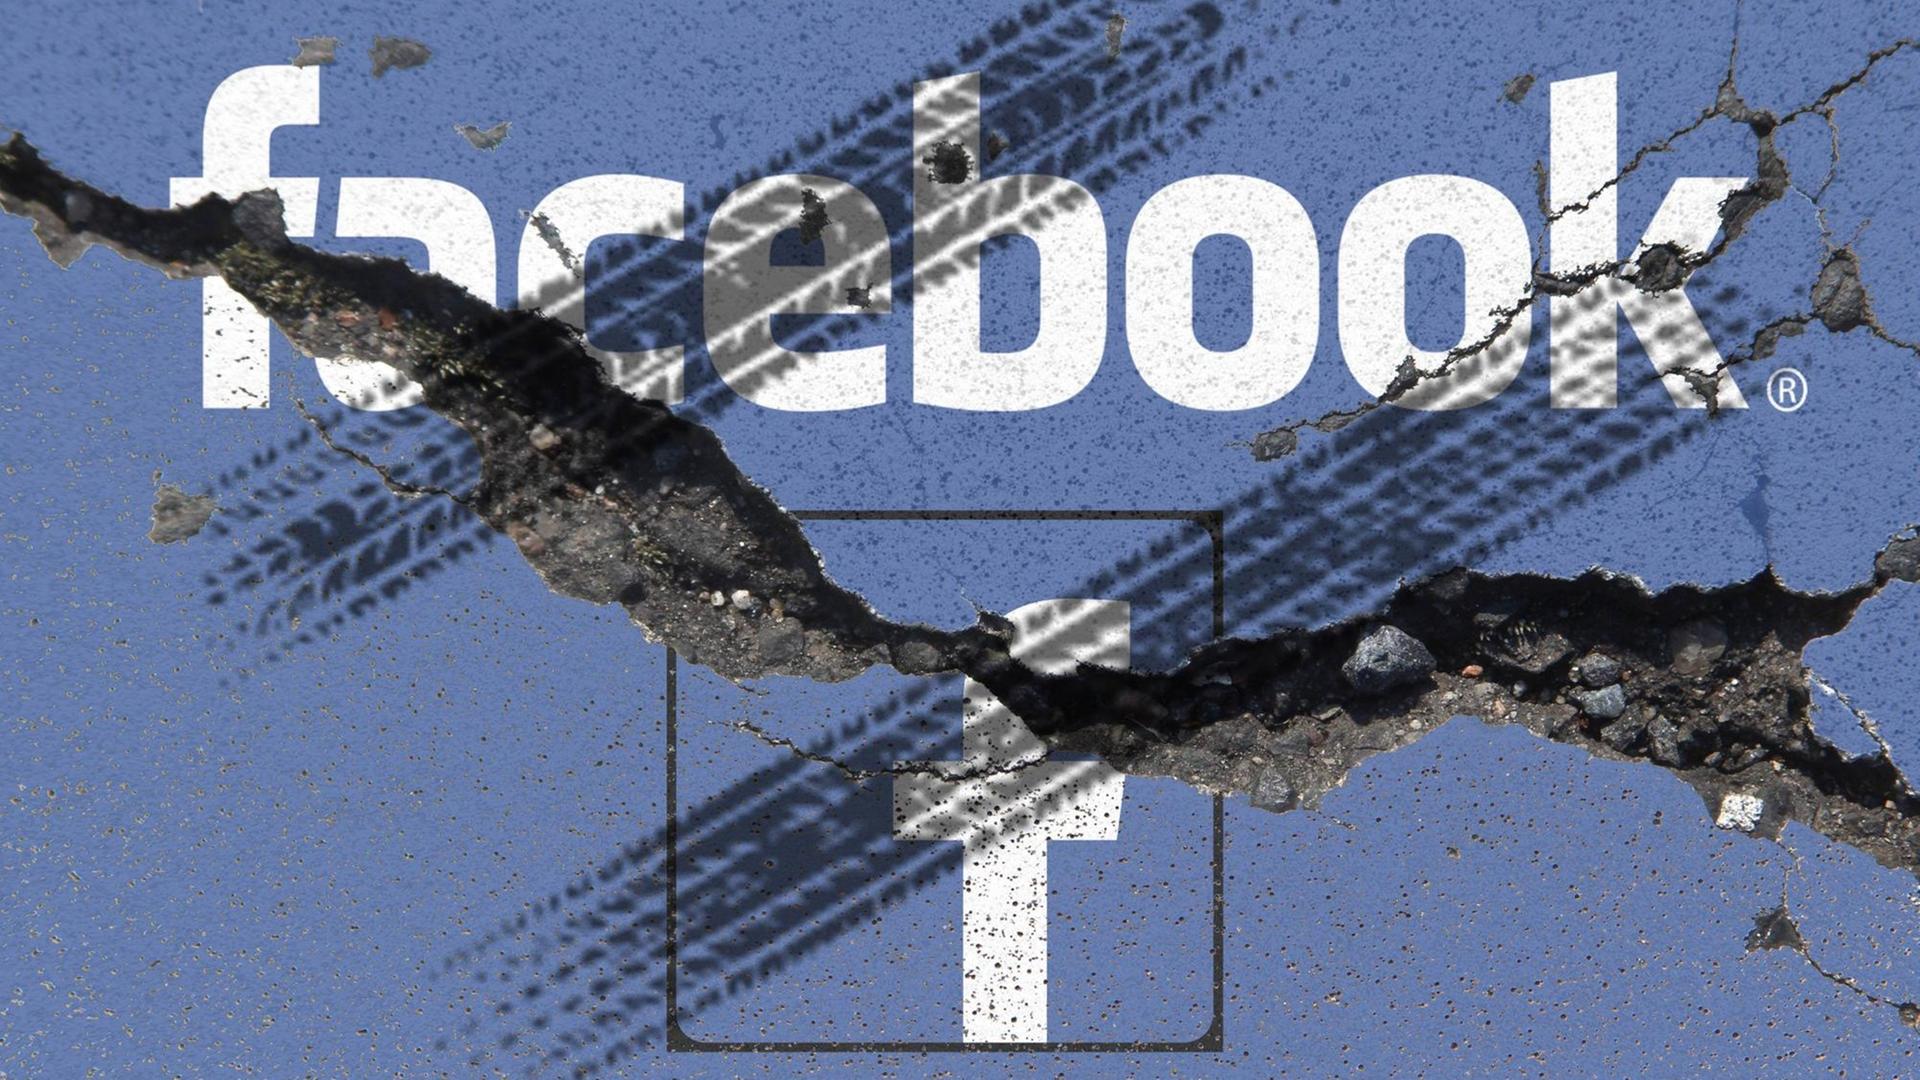 Nach dem Datenskandal steht Facebook in der Kritik